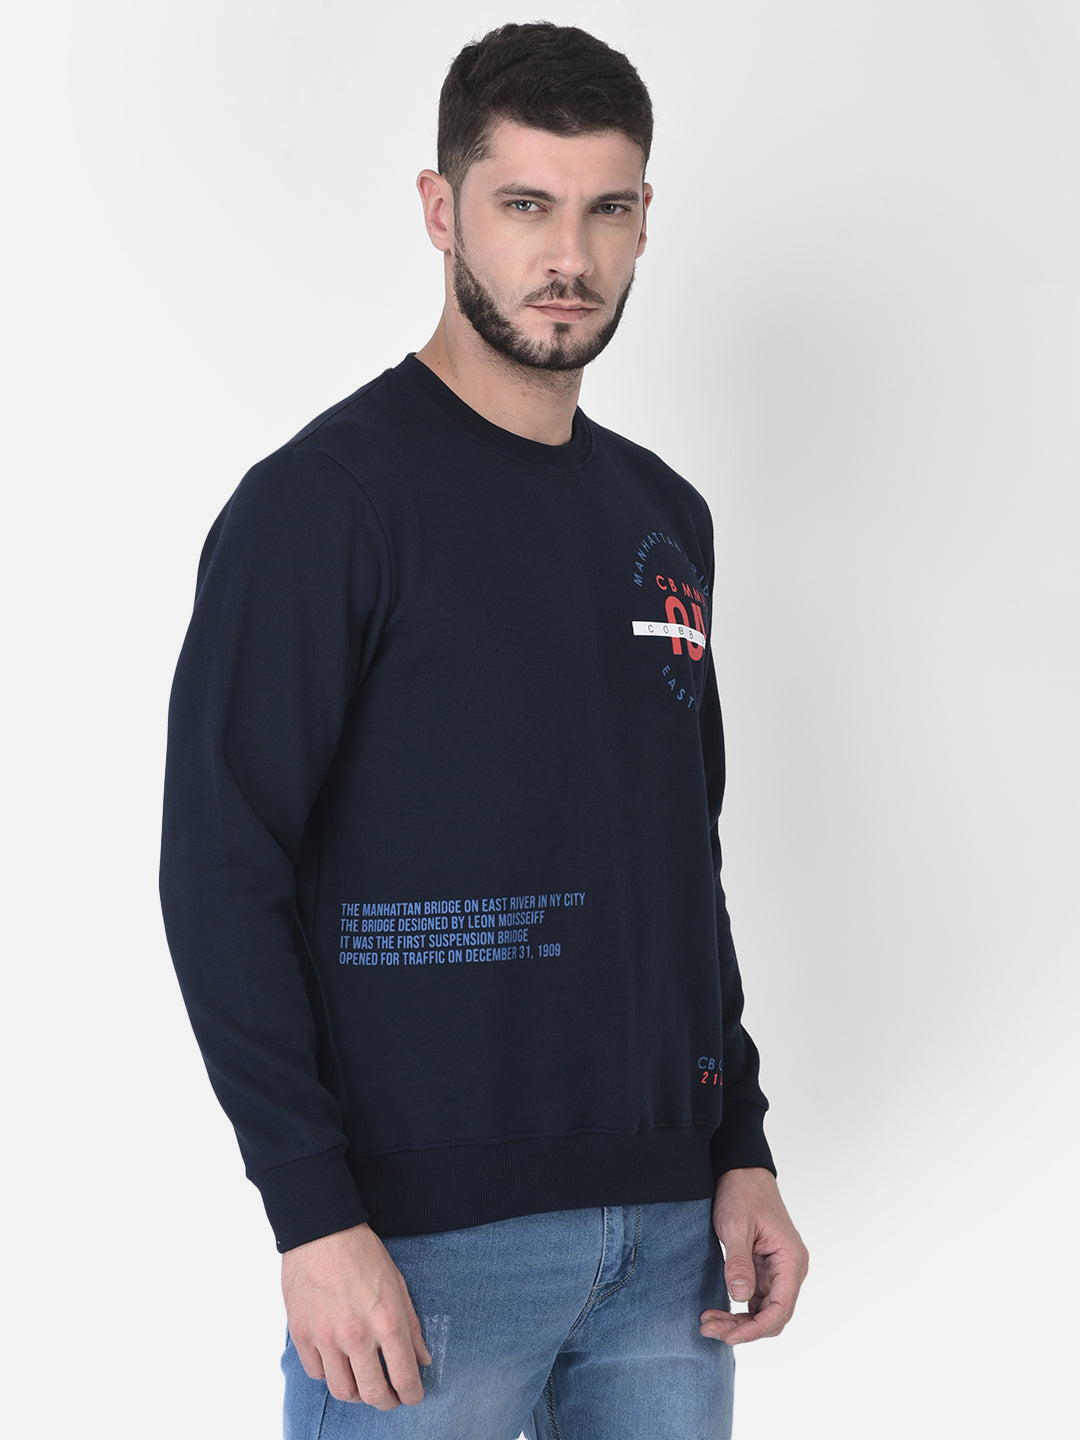 Cobb Navy Blue Printed Round Neck Sweatshirt